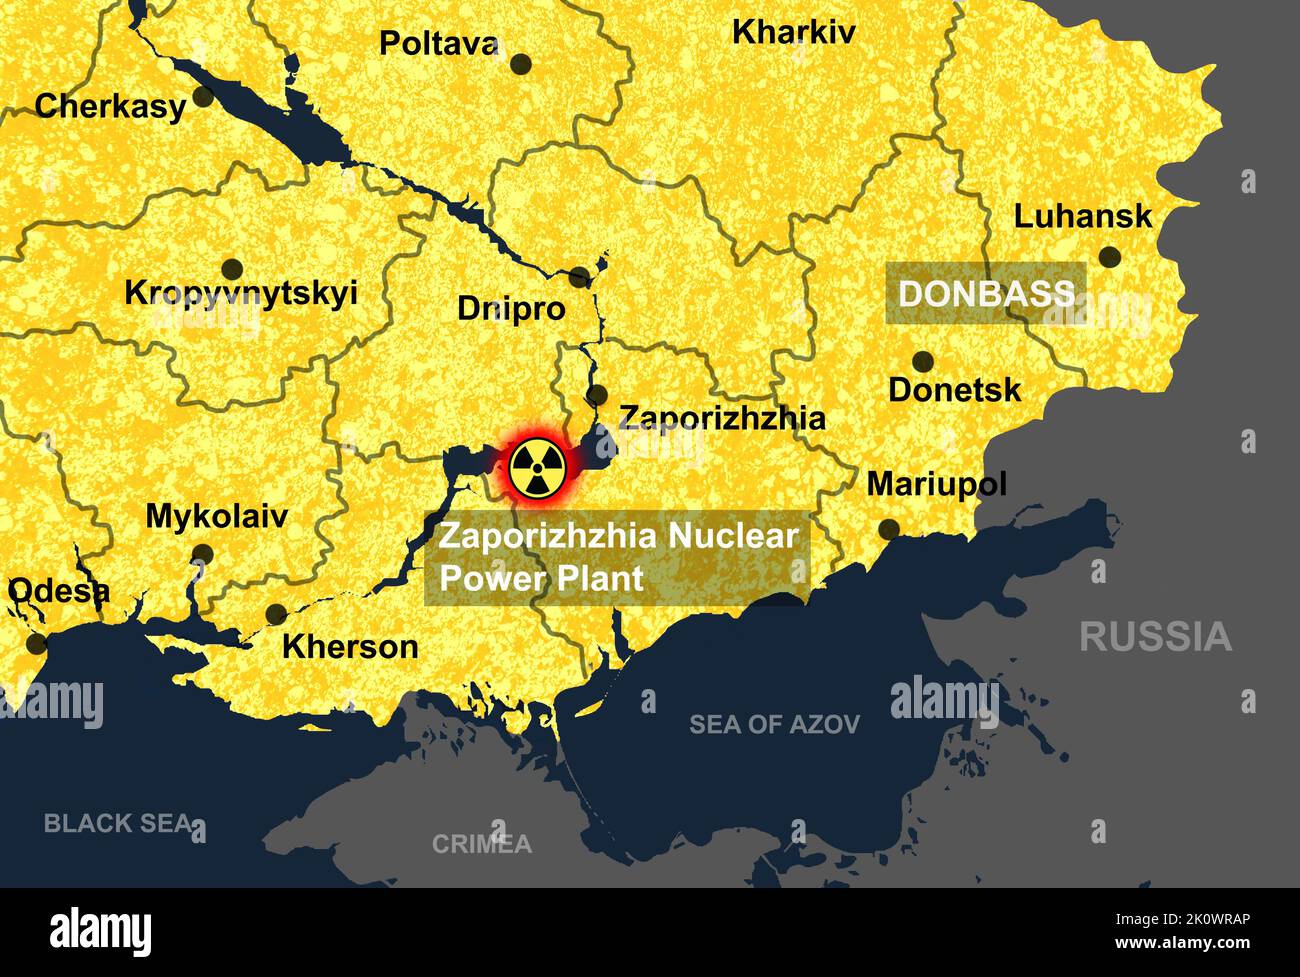 Kernkraftwerk Saporischschschja in der Ukraine Karte, gefährlicher Ort. Russisch-ukrainischer Krieg. Die Regionen Cherson, Donezk, Mykolaiv, Odesa, Luhansk und Charkiw. Stockfoto